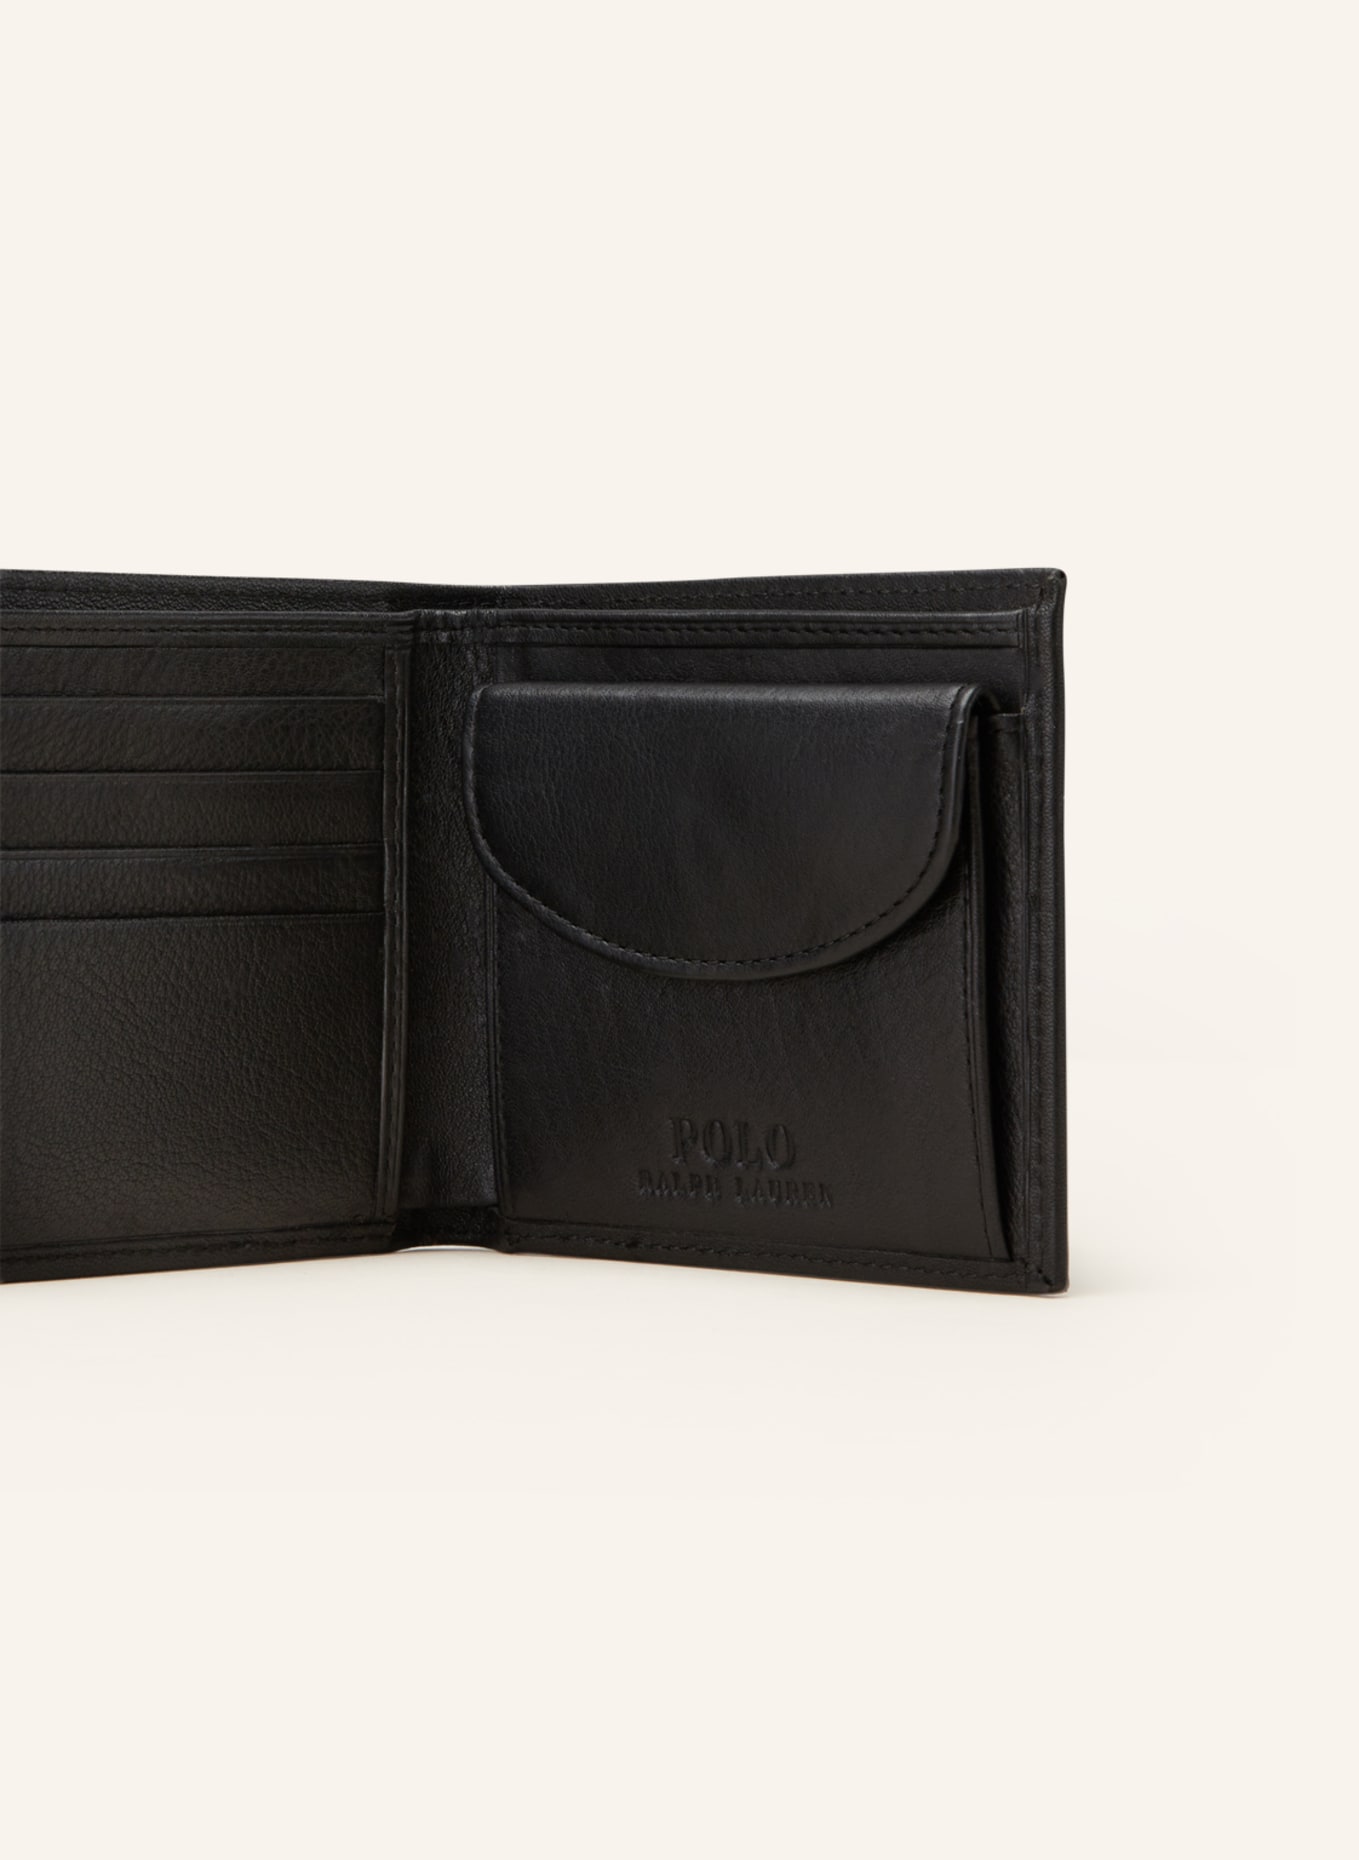 POLO RALPH LAUREN Wallet, Color: BLACK (Image 3)